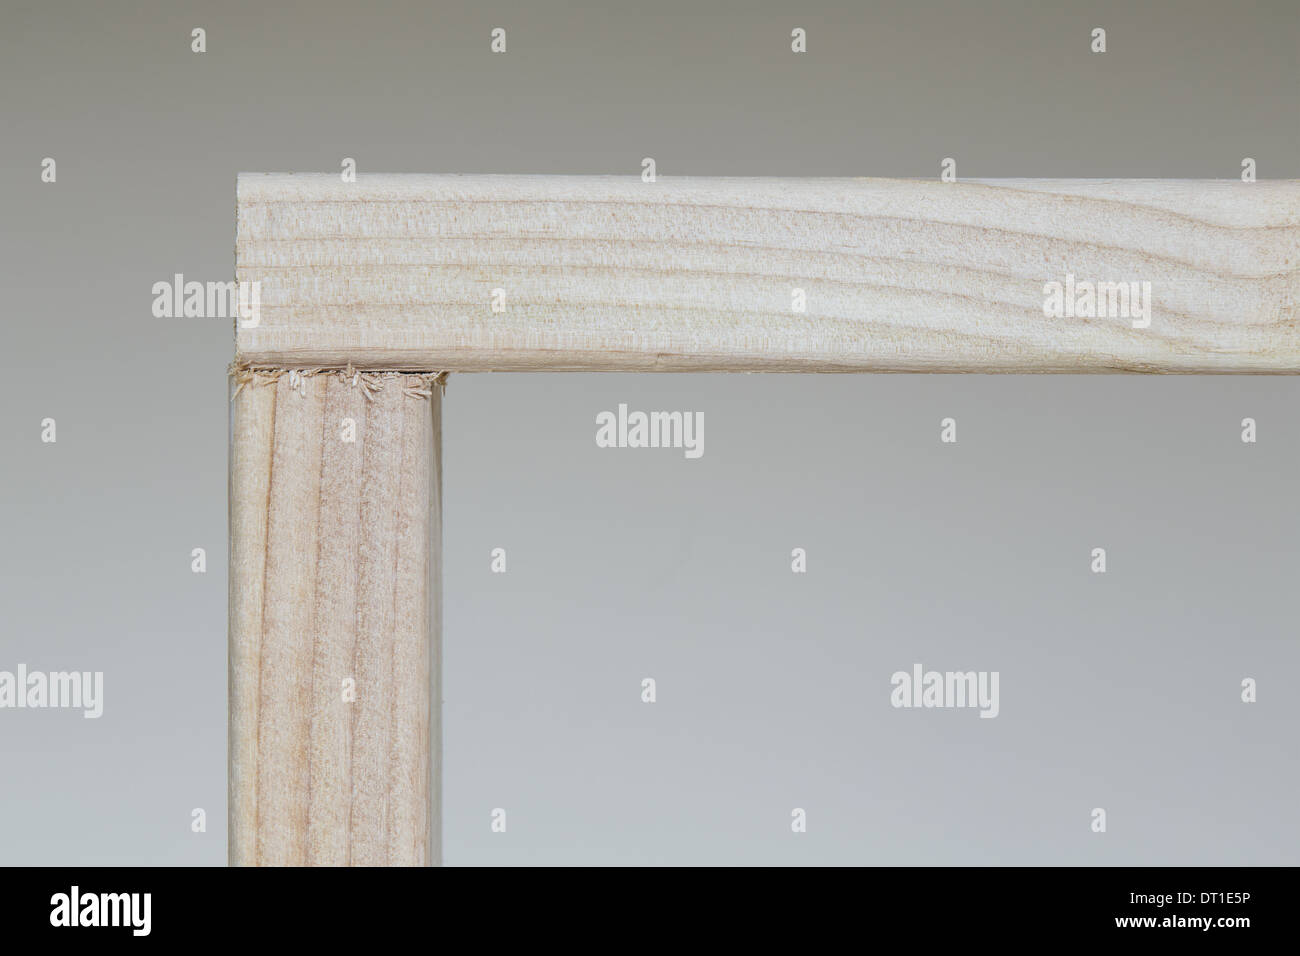 L'État de Washington USA Pin 2x4 des poteaux en bois à l'angle droit Banque D'Images